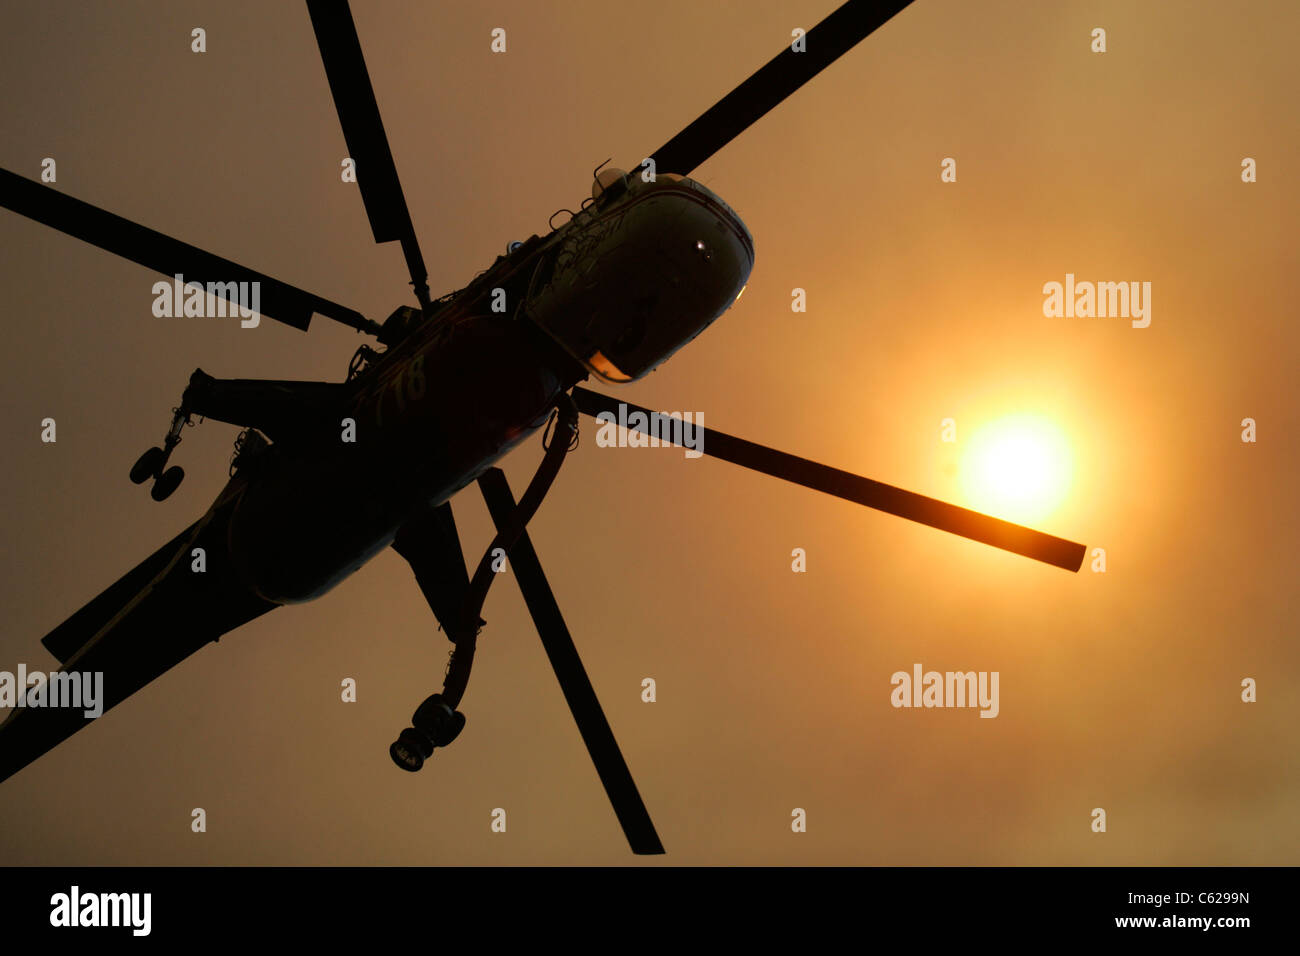 Un agua helicóptero vuela bajo un hijo carmesí filtrada por el humo de un incendio Foto de stock